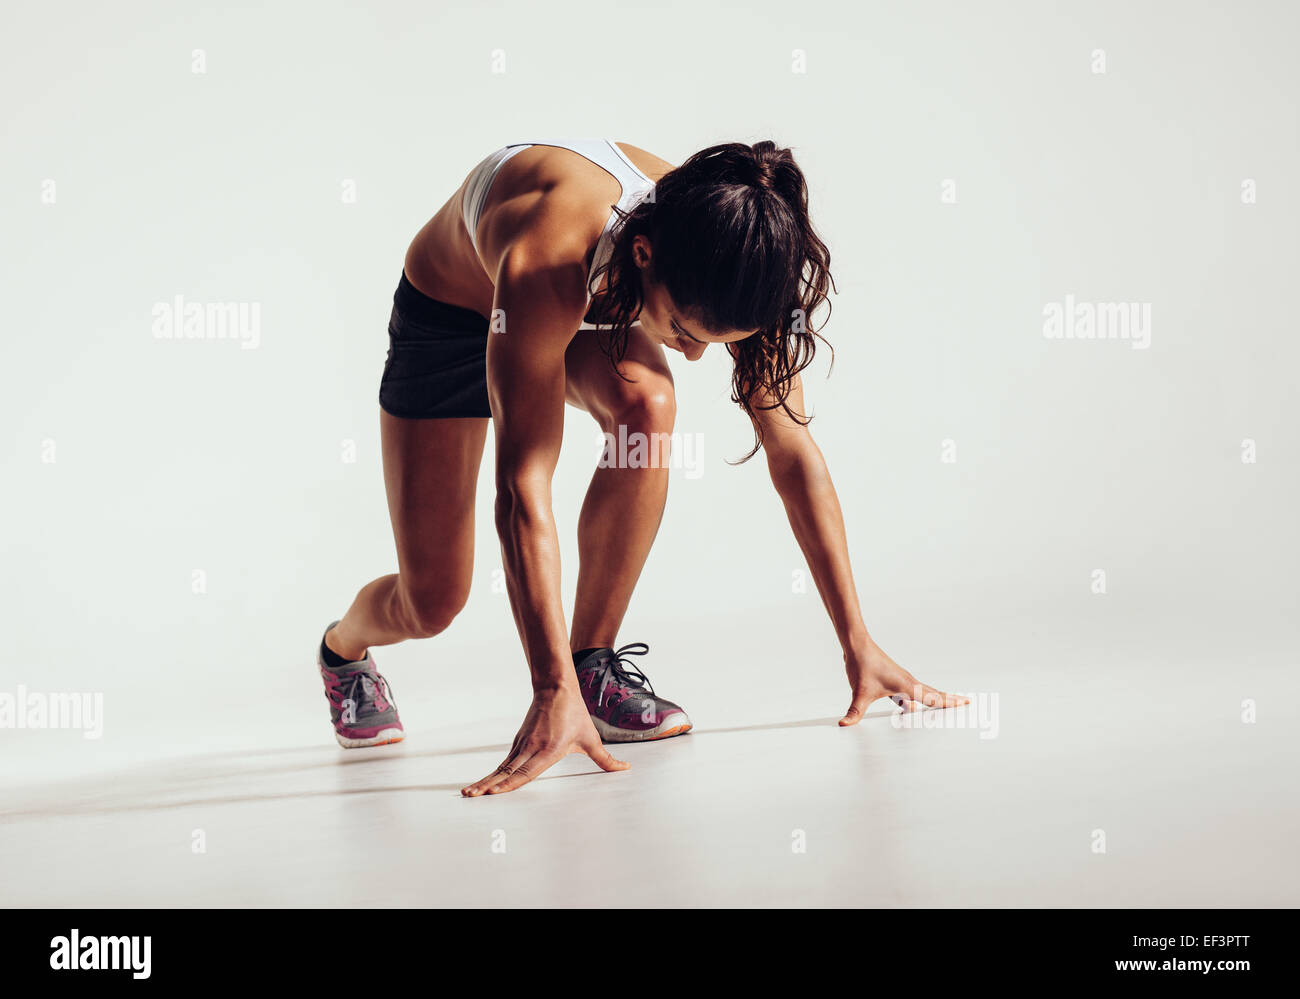 Passen Sie Sportlerin startbereit auf grauem Hintergrund. Frauen Fitness-Modell für einen Sprint vorbereiten. Stockfoto